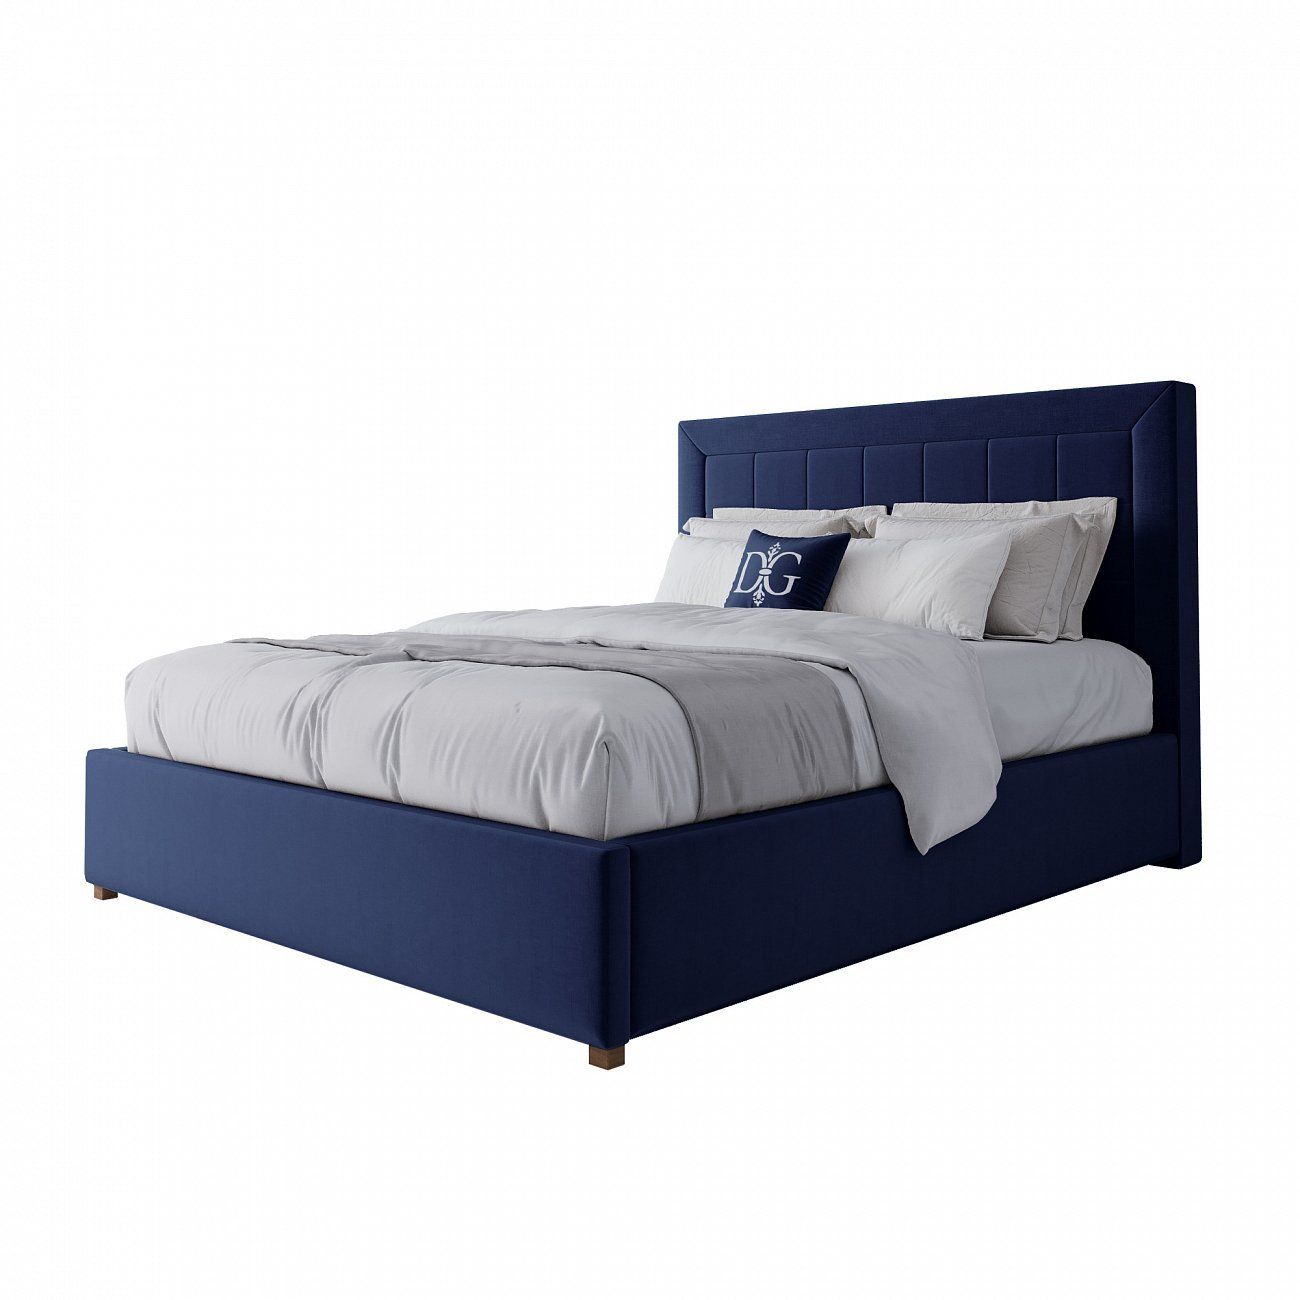 Кровать двуспальная 160х200 синяя Elizabeth